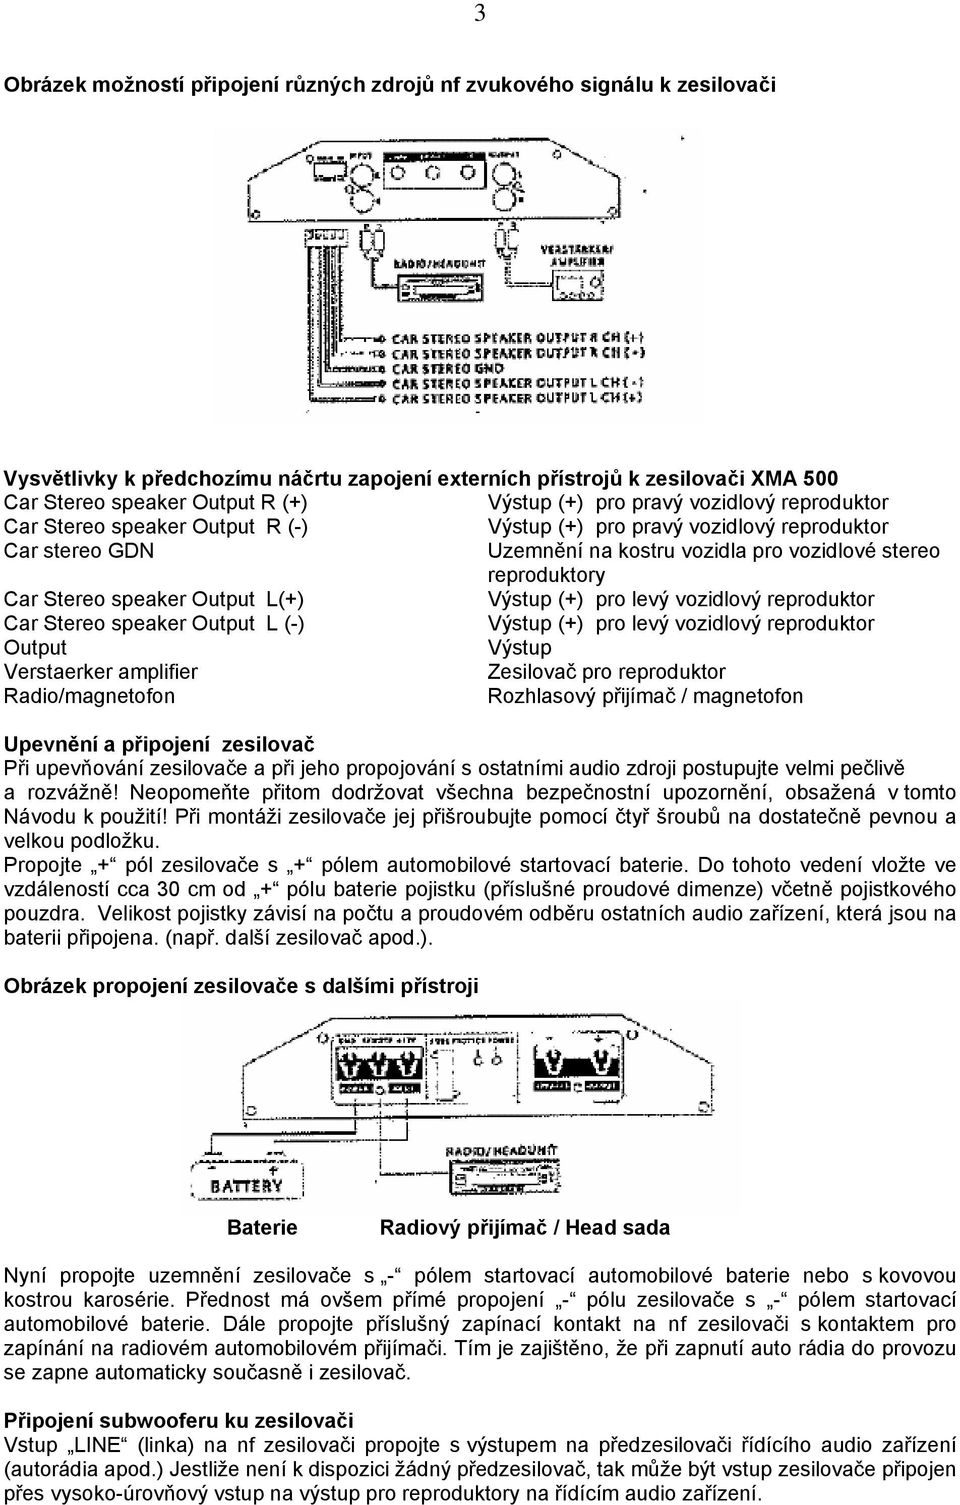 speaker Output L(+) Výstup (+) pro levý vozidlový reproduktor Car Stereo speaker Output L (-) Výstup (+) pro levý vozidlový reproduktor Output Výstup Verstaerker amplifier Zesilovač pro reproduktor